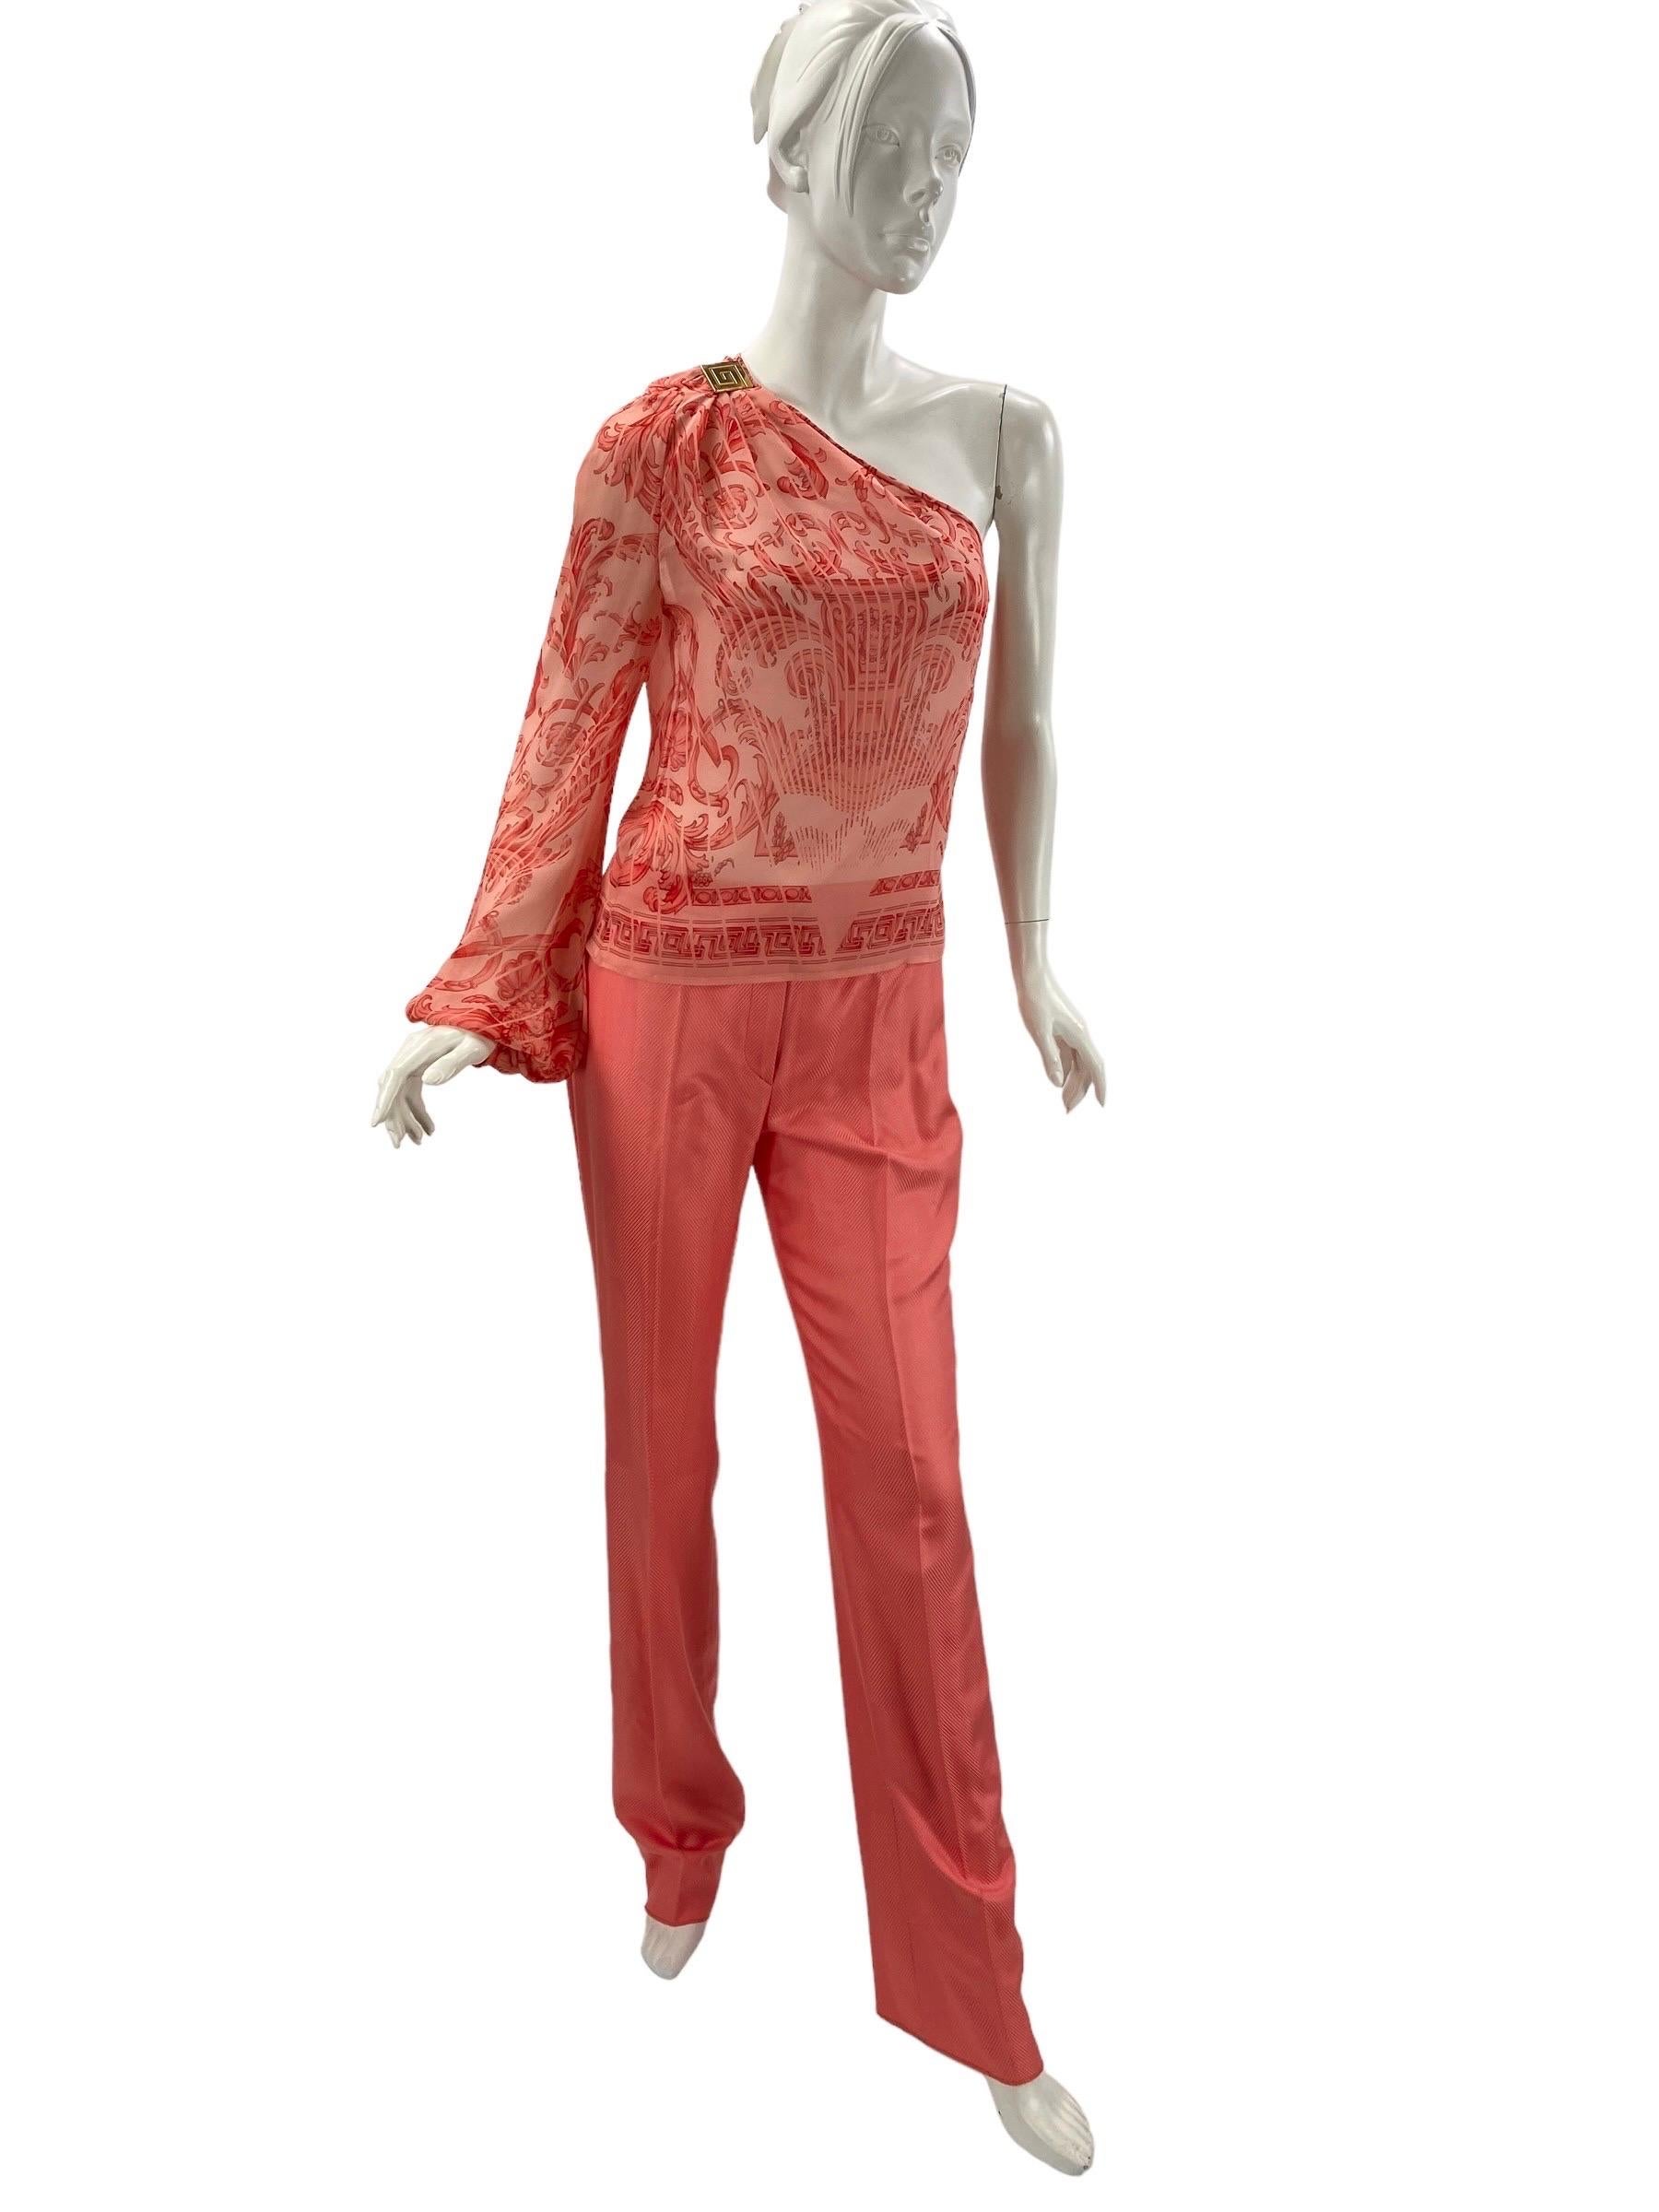 Vintage Gianni Versace Couture Pink Silk 3pc Pant Suit - Black Label.
Set includes - Pants, Halter Vest, Top.
Italian size 42 - US 6/8
100% Silk, Pink Color.
Pants: Waist - 30.5 inches, Hips - 36/38